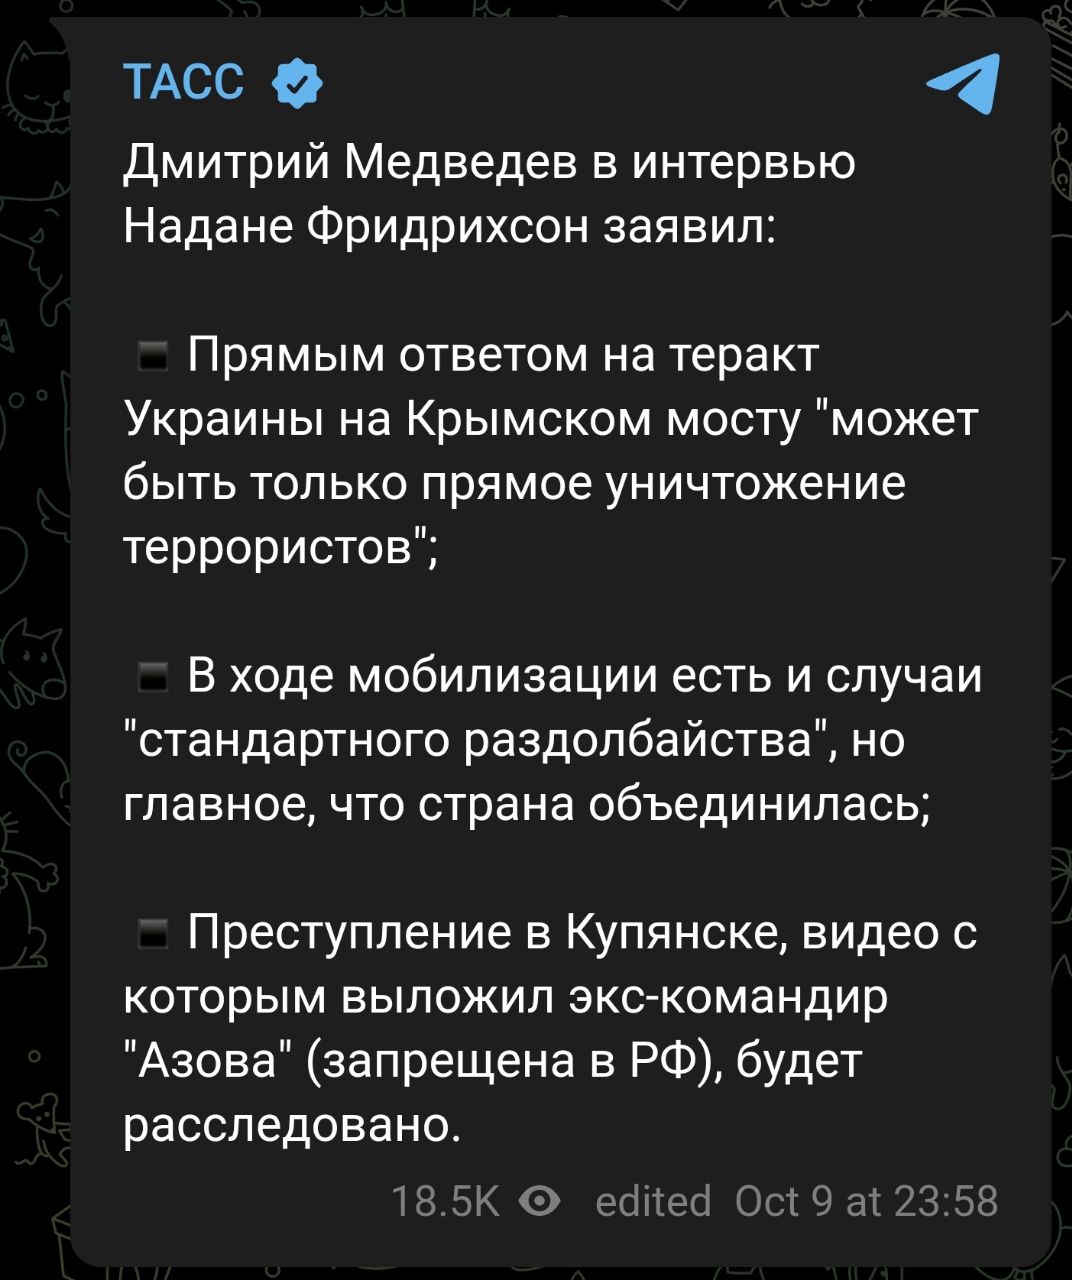 Алкоголик Медведев заявил, что «Россия должна ответить на теракт Украины против Крымского моста только прямым уничтожением террористов»🤡